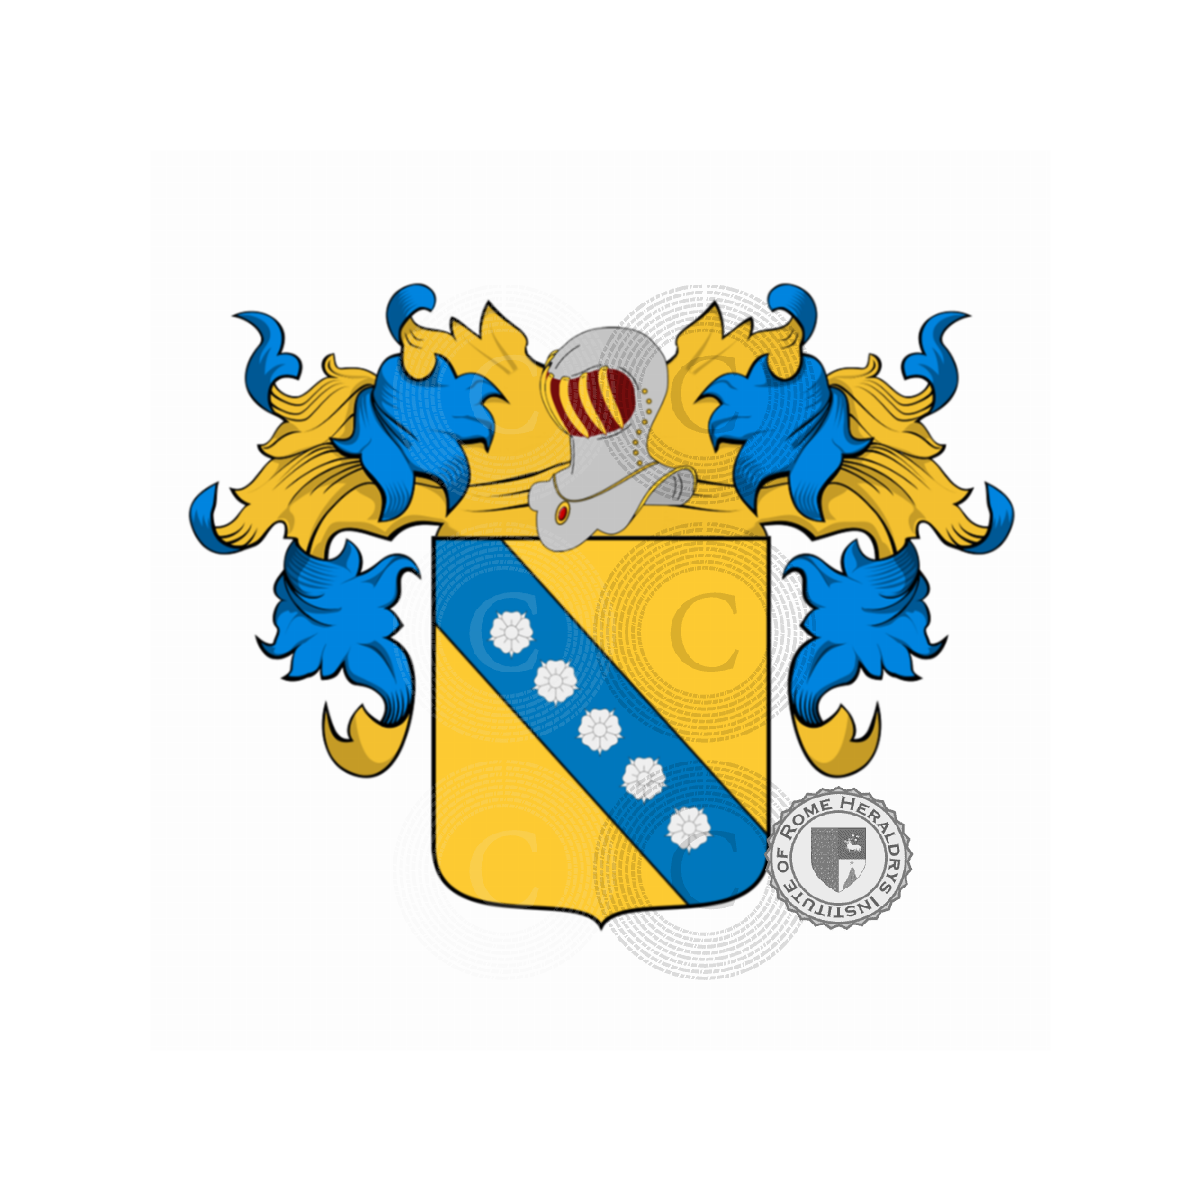 Wappen der FamilieGatti, del gatto,Gatta,Ugatti